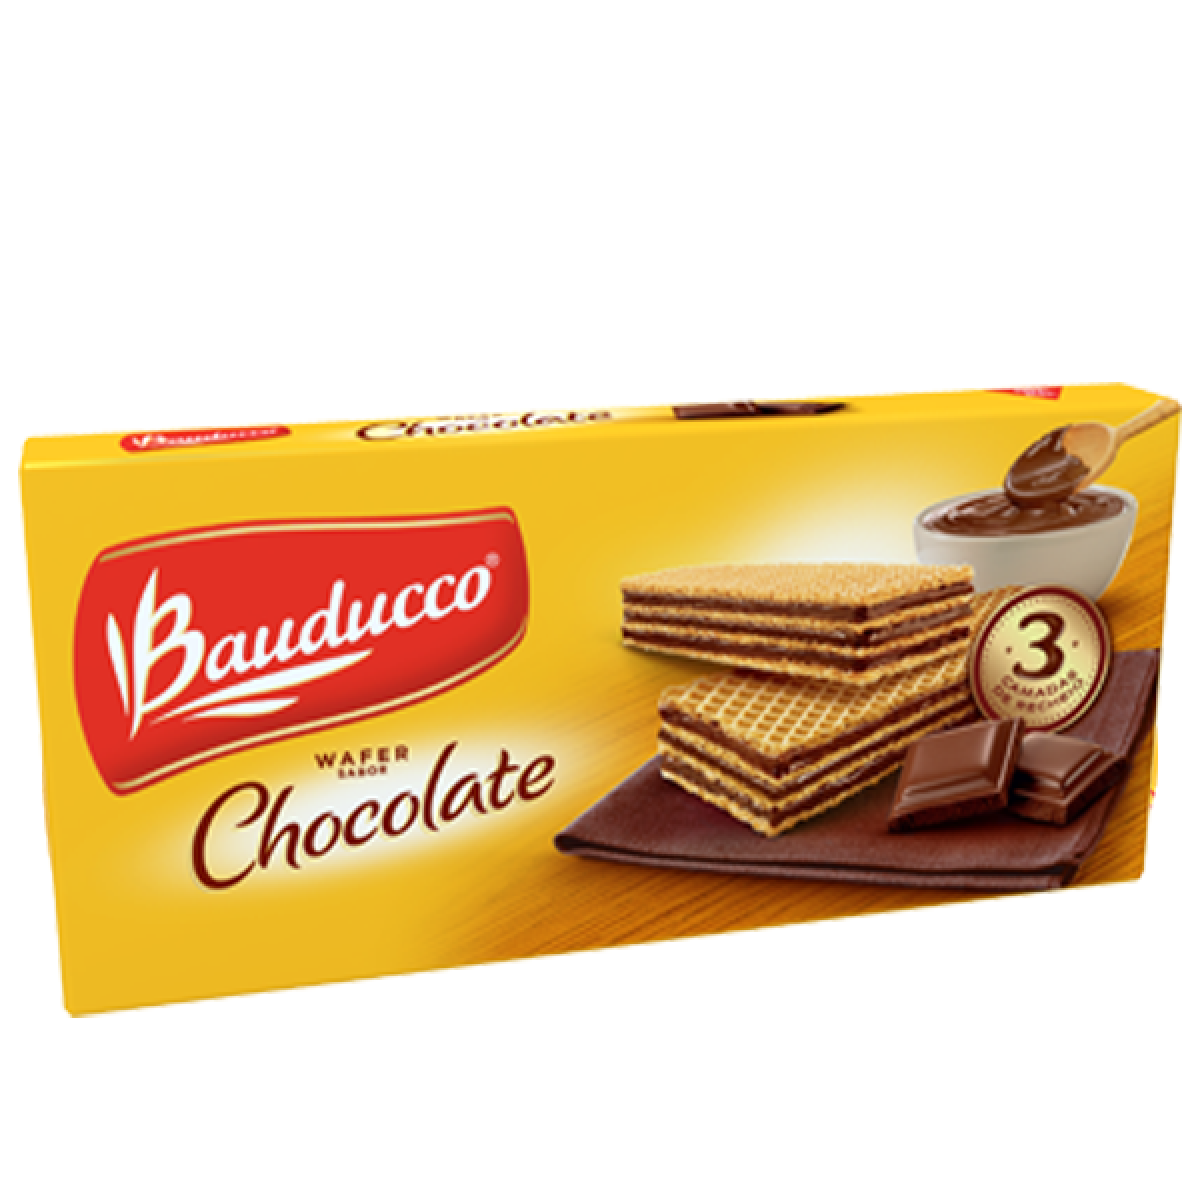 Biscoito Wafer Chocolate BAUDUCCO 140g - Biscoito Nacional - Chá & Biscoito